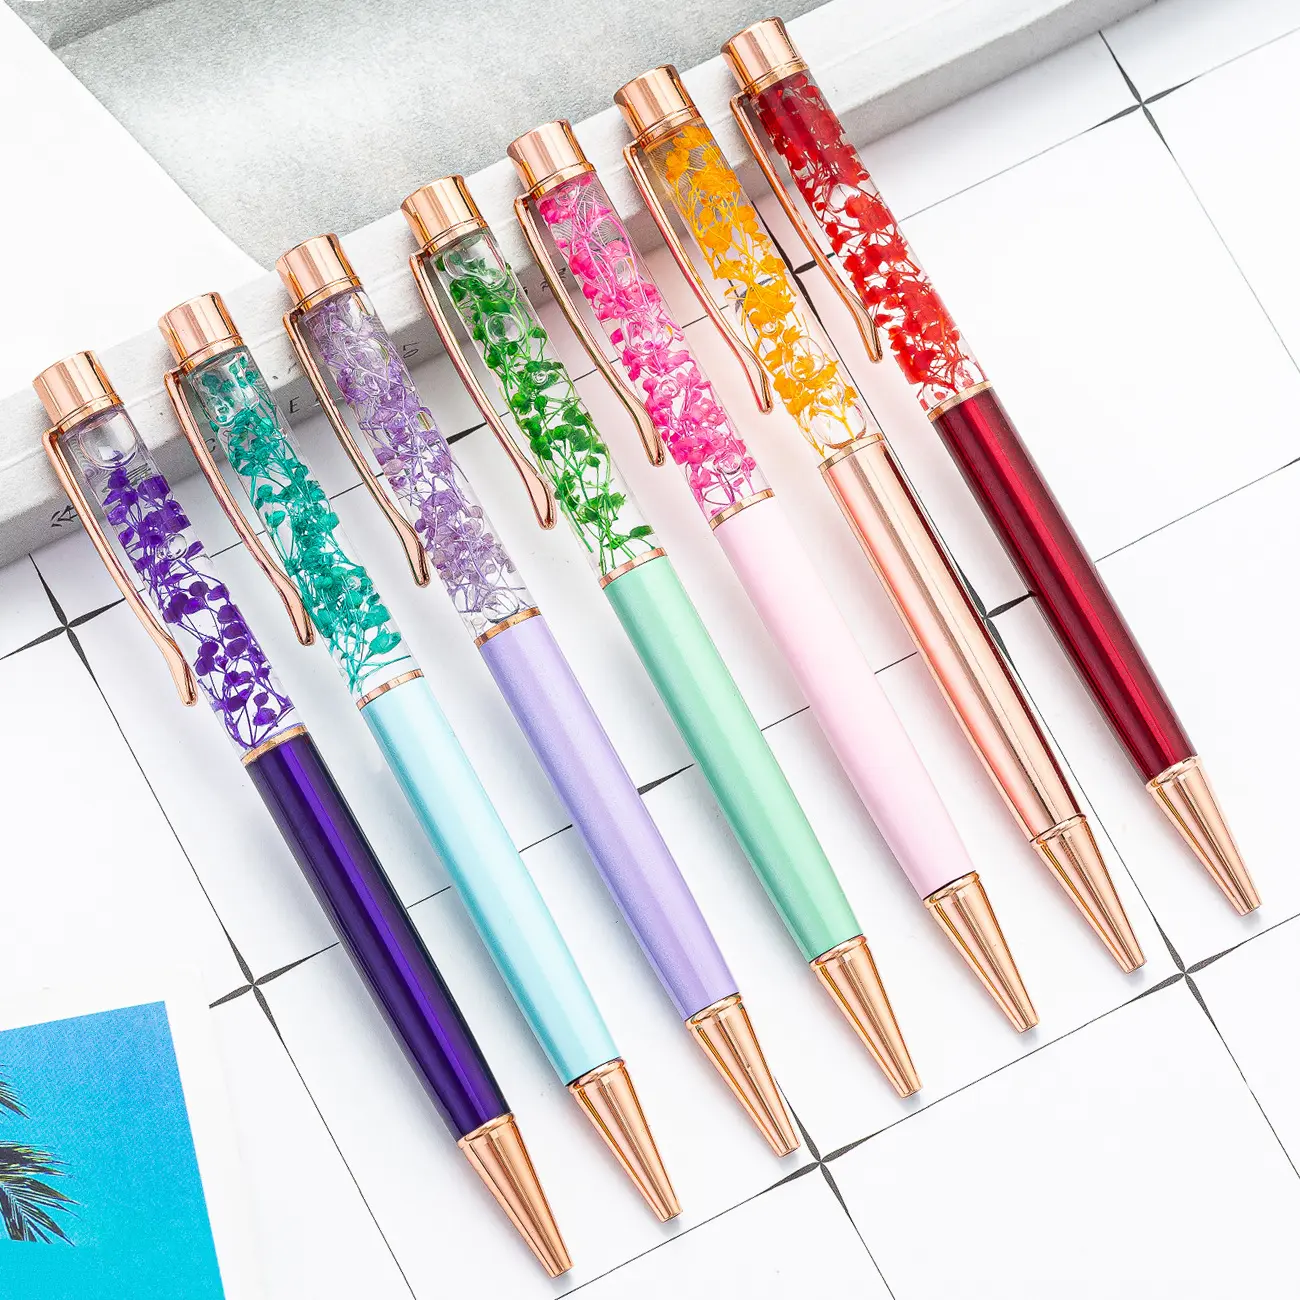 قلم كروي مبتكر من الجهة المُصنعة للبيع المباشر قلم جاف بالزيت يملأ بالزهور ذو أنبوب فارغ جذاب قلم جاف للإعلان قلم هدية